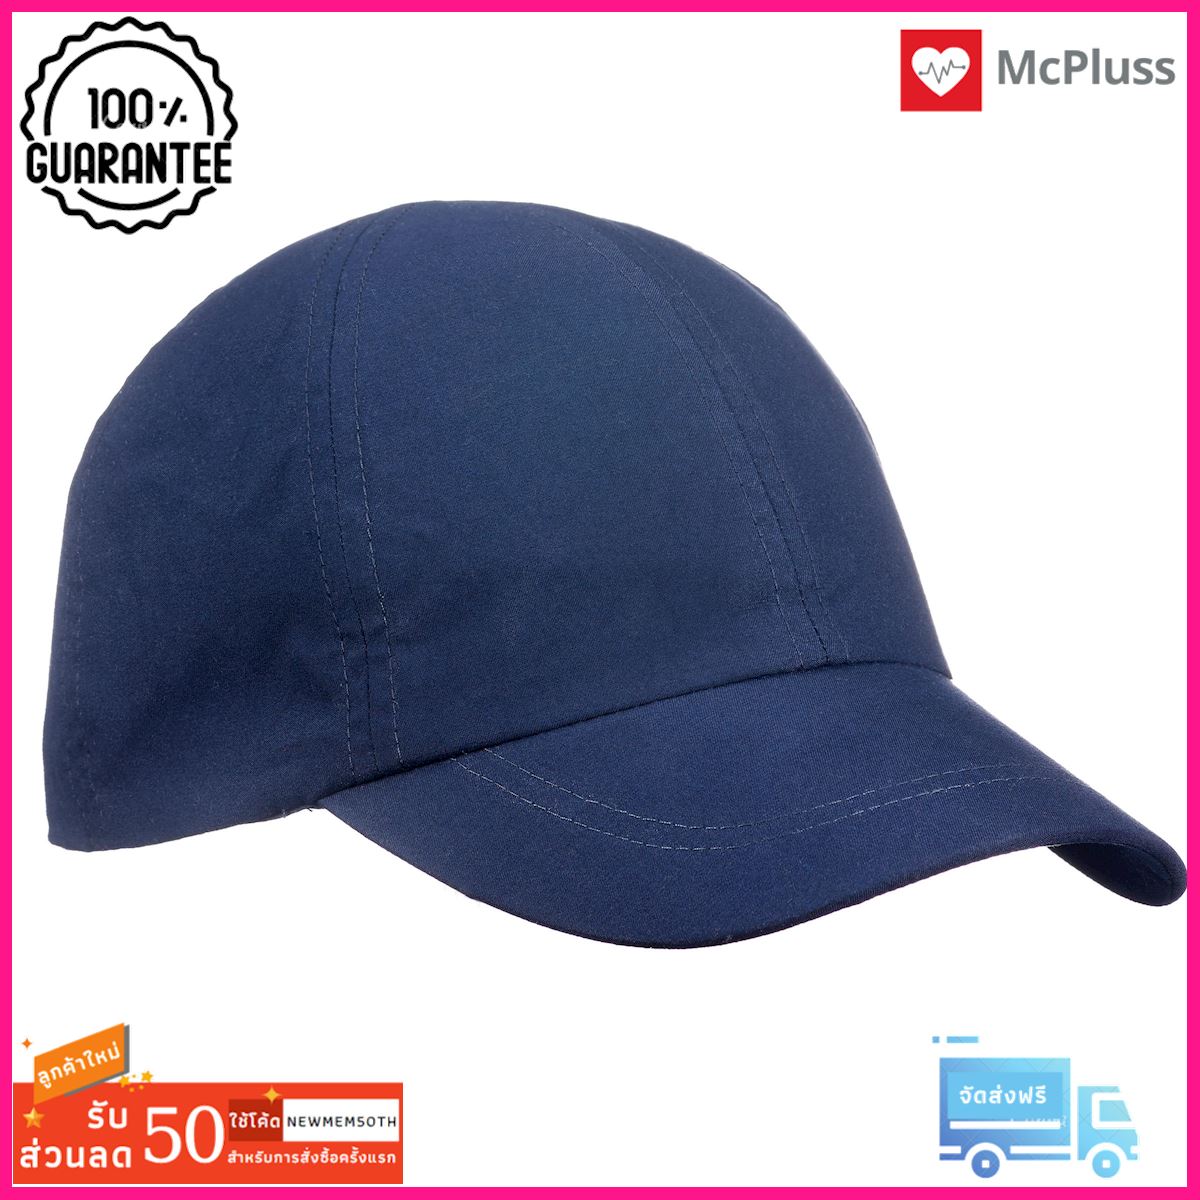 หมวกสำหรับการเทรคกิ้งบนภูเขารุ่น TREK 100 (สีฟ้า) TREK 100 MOUNTAIN TREKKING CAP - BLUE ด่วน ของมีจำนวนจำกัด